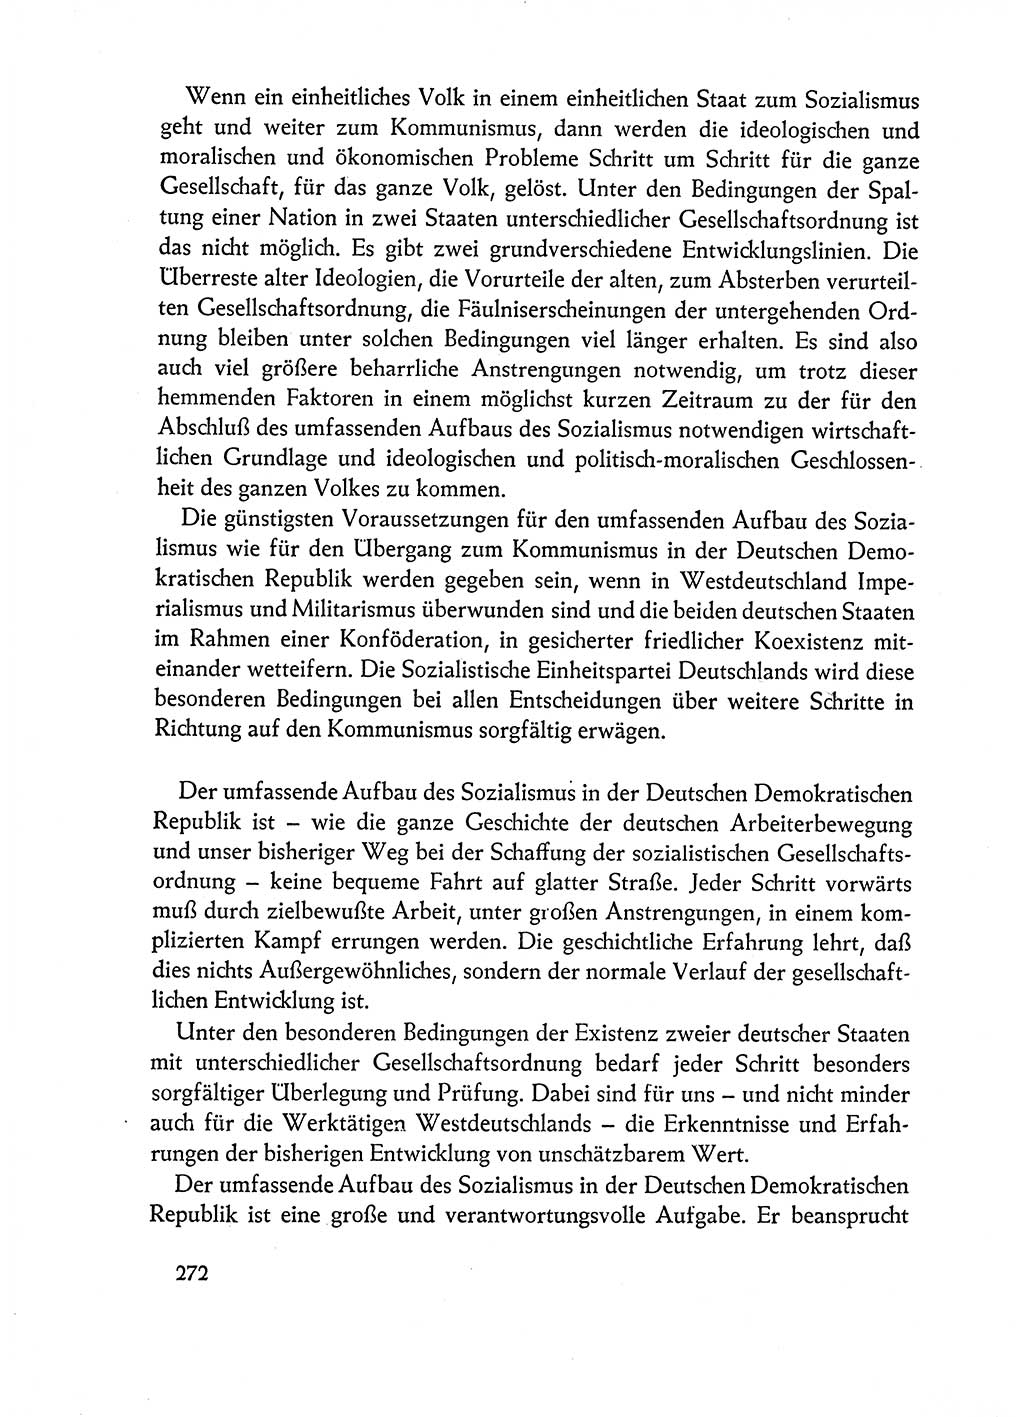 Dokumente der Sozialistischen Einheitspartei Deutschlands (SED) [Deutsche Demokratische Republik (DDR)] 1962-1963, Seite 272 (Dok. SED DDR 1962-1963, S. 272)